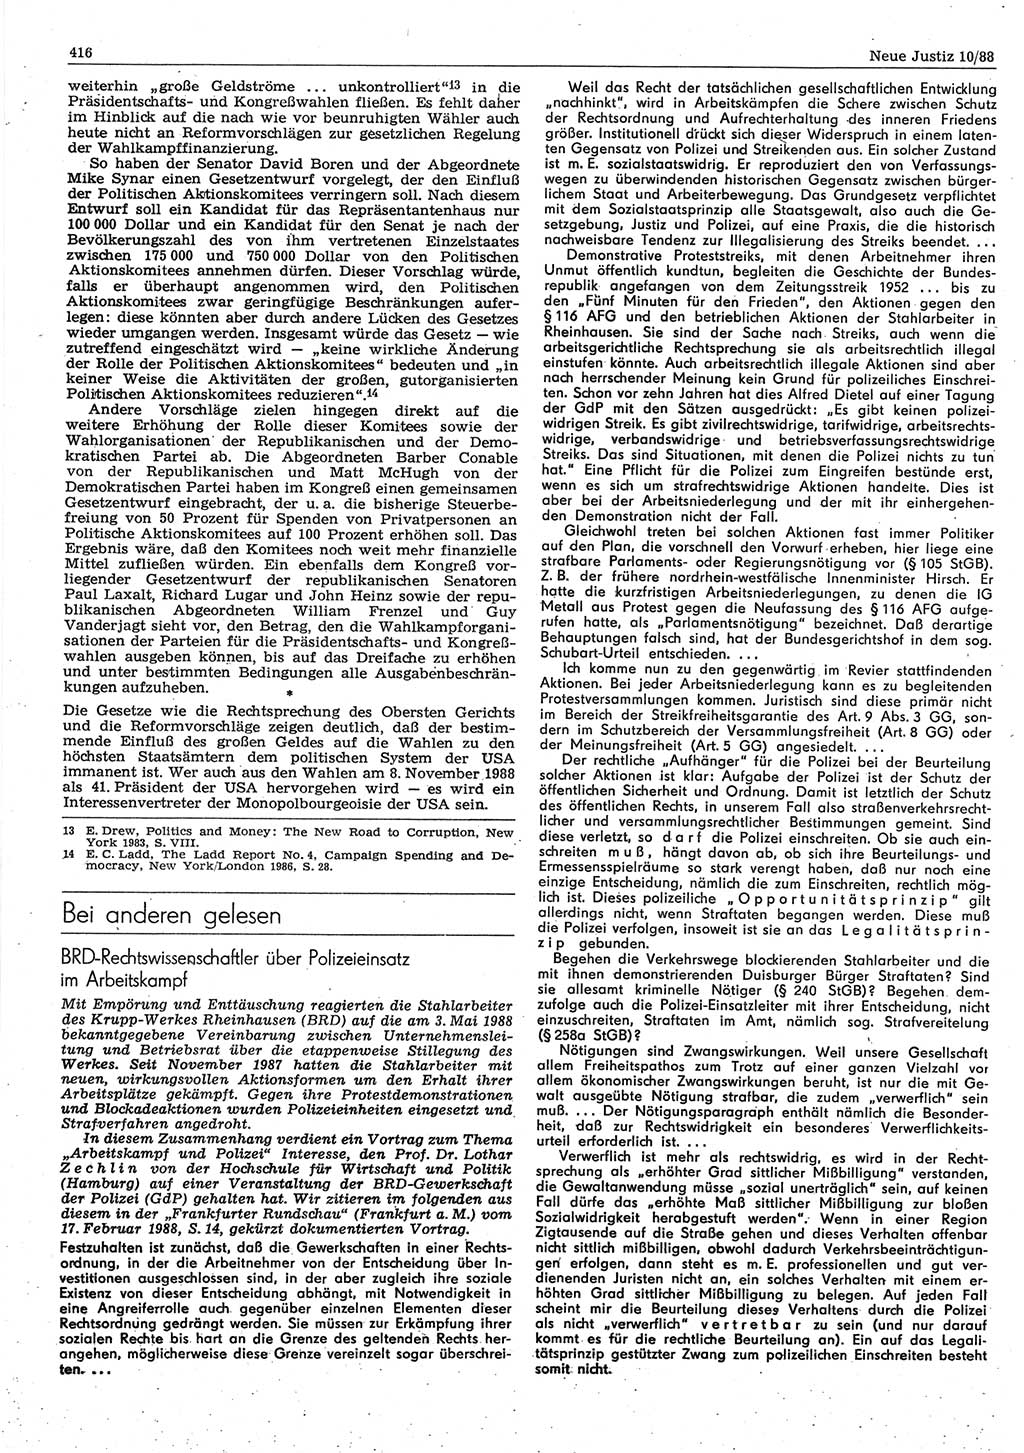 Neue Justiz (NJ), Zeitschrift für sozialistisches Recht und Gesetzlichkeit [Deutsche Demokratische Republik (DDR)], 42. Jahrgang 1988, Seite 416 (NJ DDR 1988, S. 416)